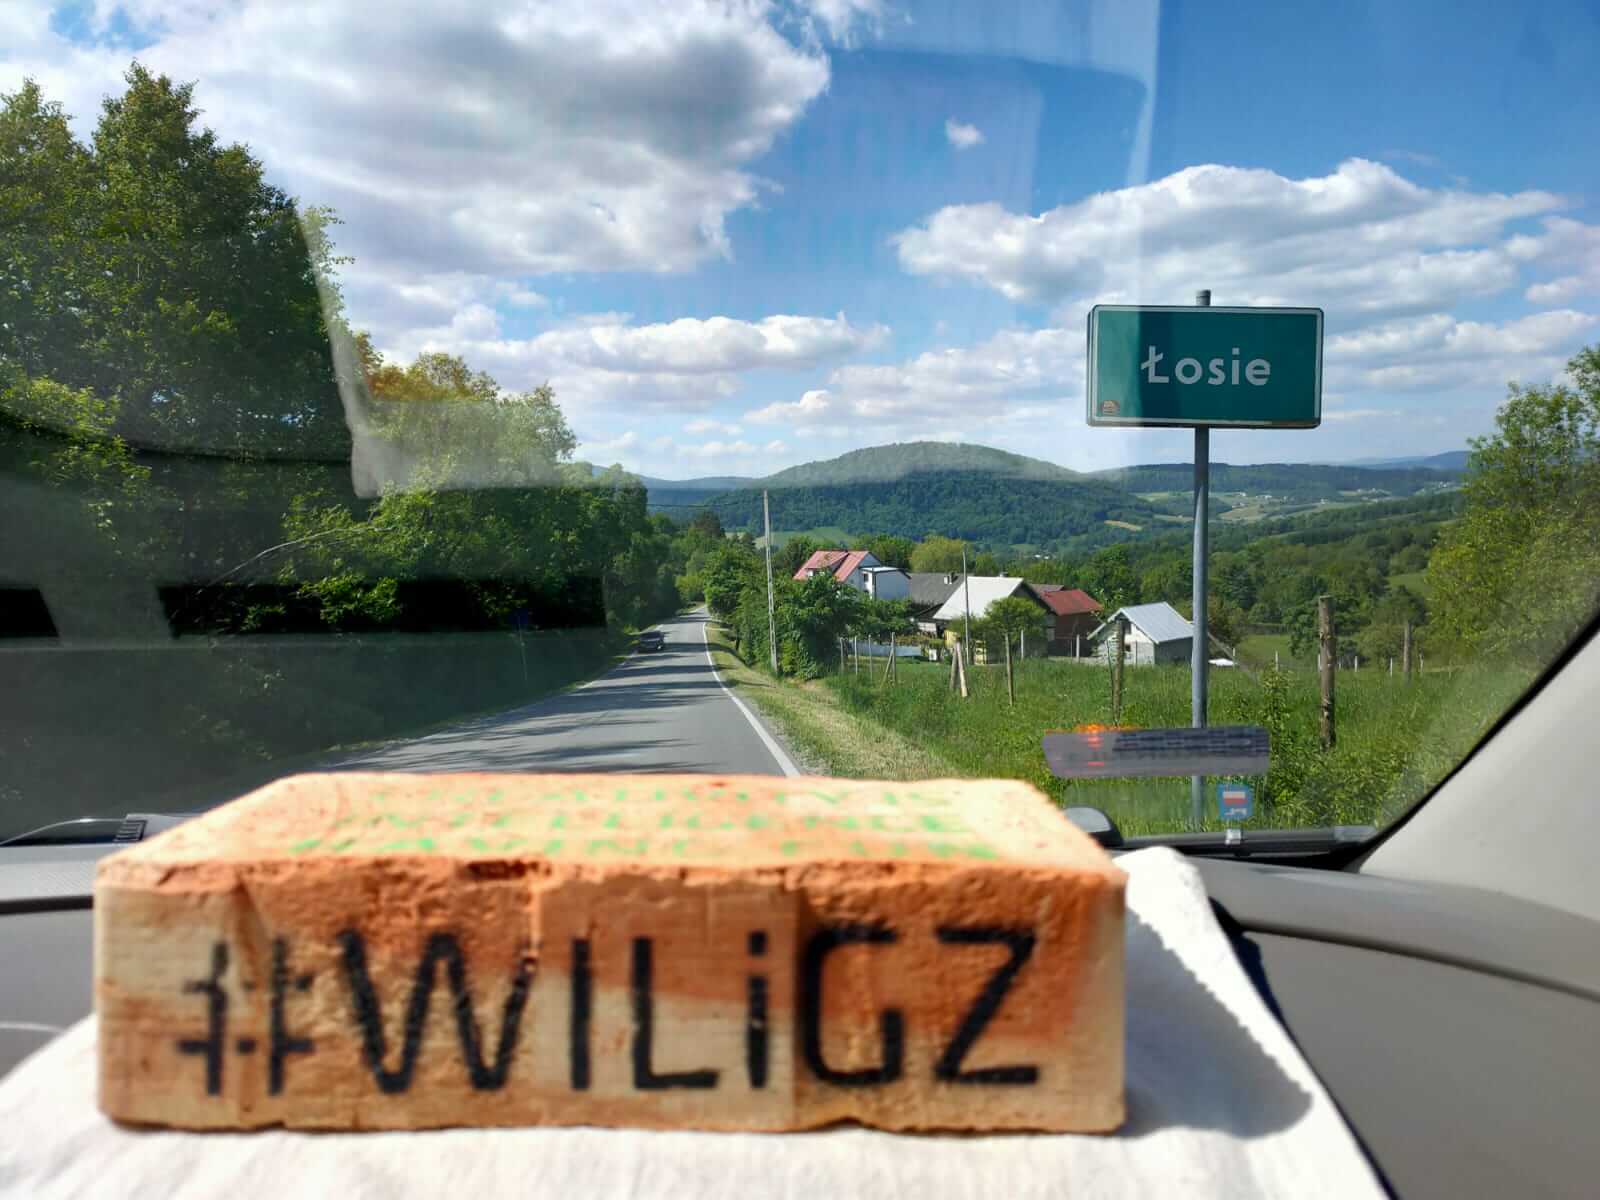 Cegła z czarnym hszatagiem i napisem WILiGZ leży na desce rozdzielczej samochodu. Przez szybe widać góry, domy, jezdnie oraz znak z nazwą miejcowości Łosie.